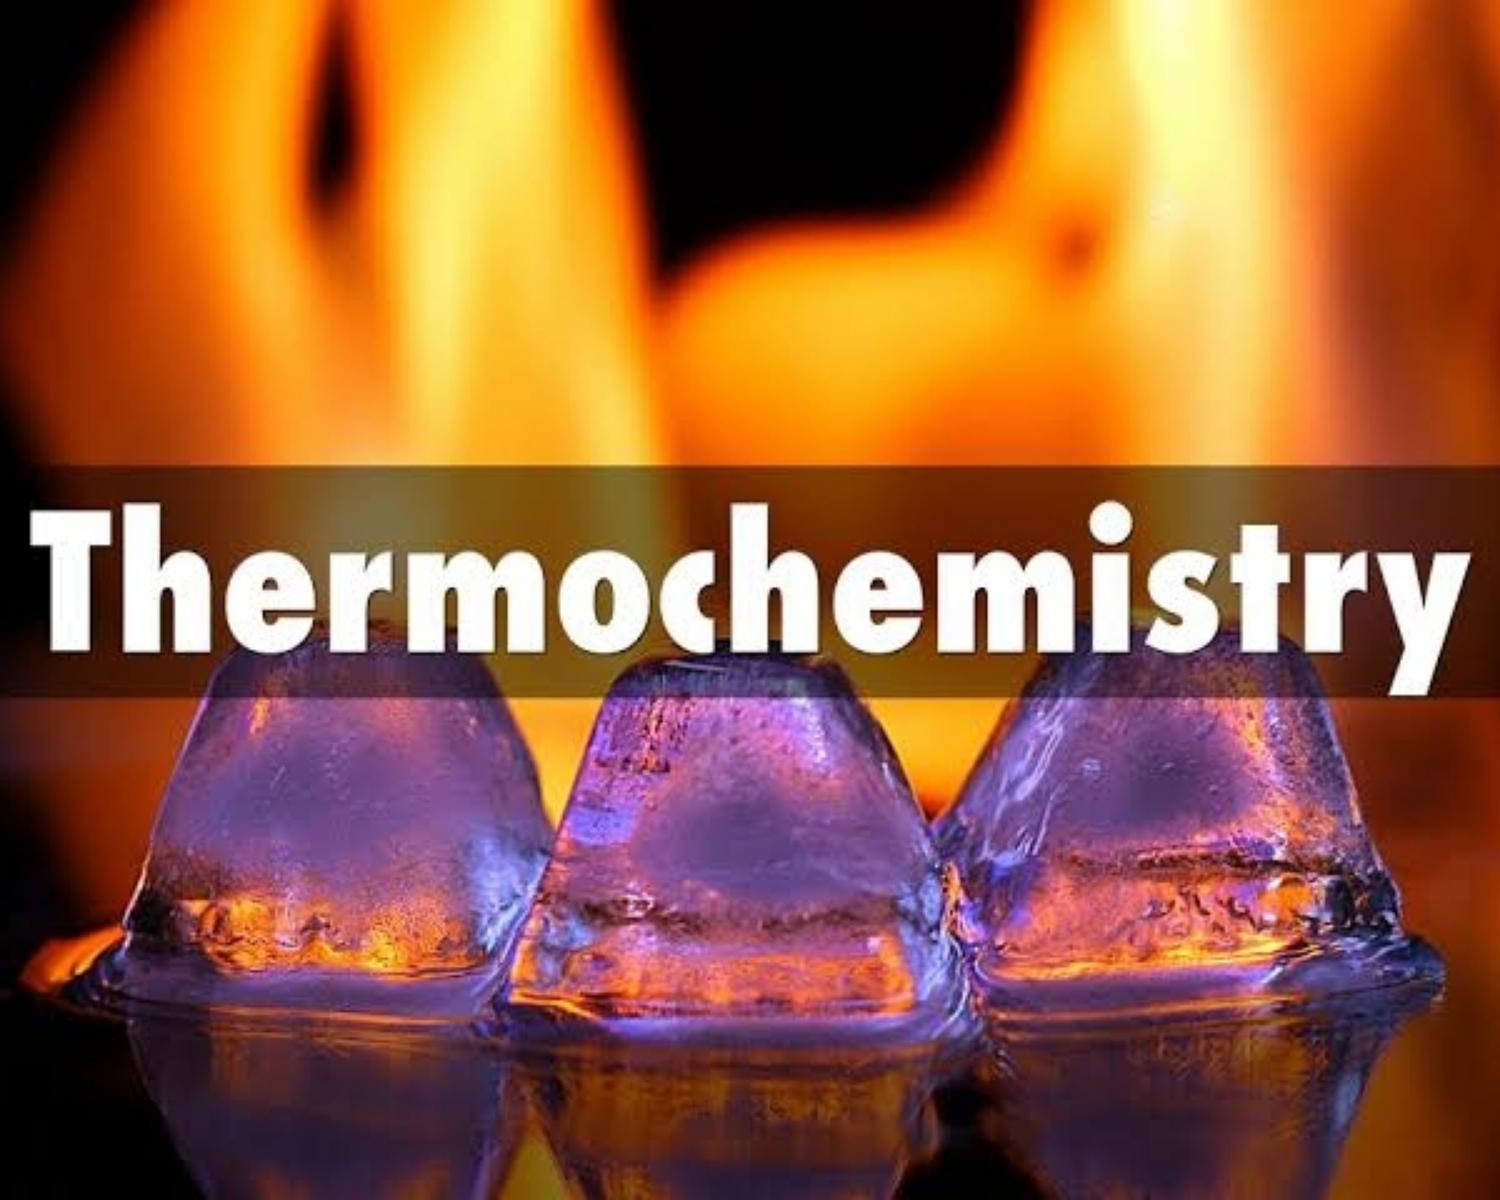 Thermochemistry basics